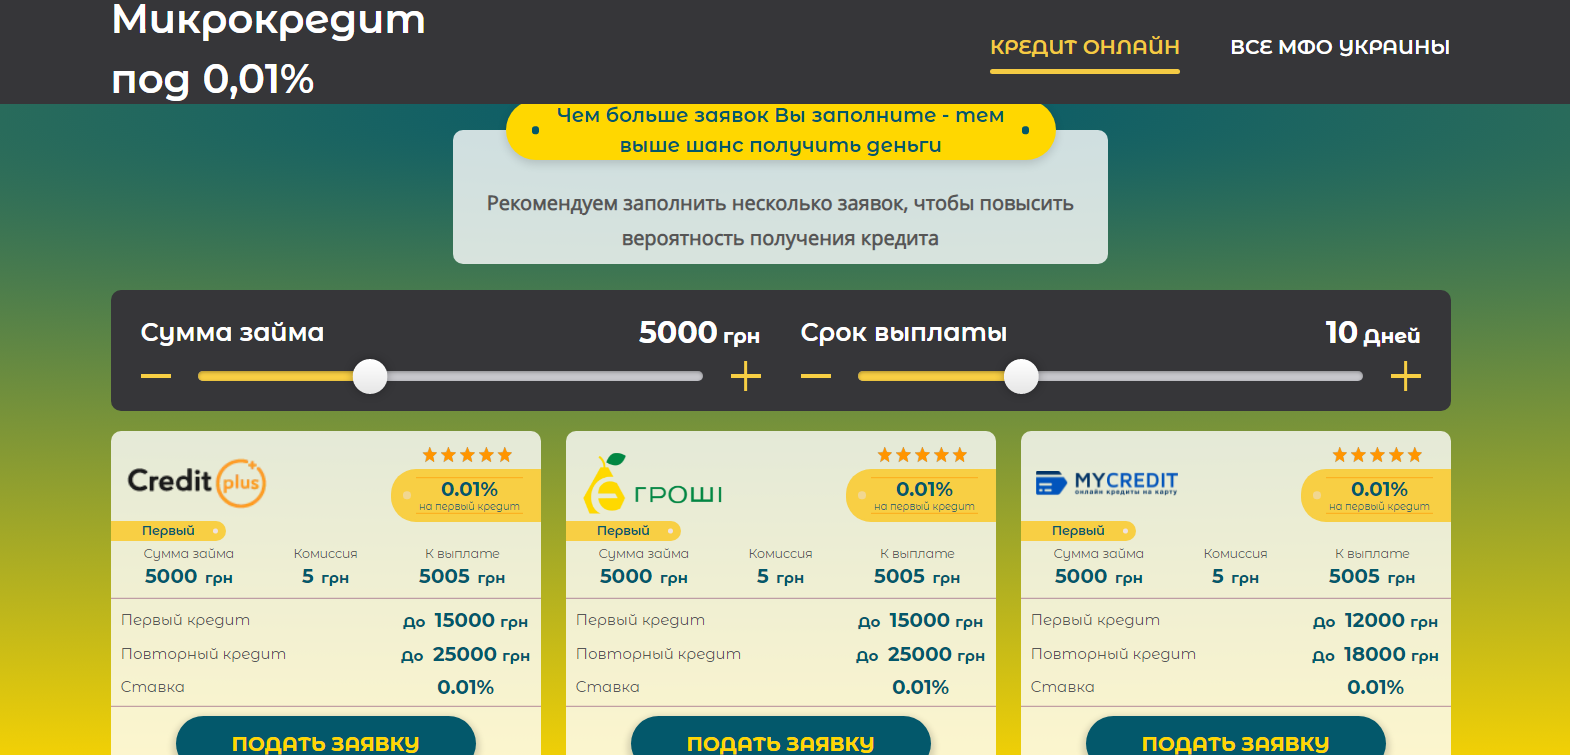 Клоны сайтов Приват и Monobank охотятся за персональными данными украинцев (фото)